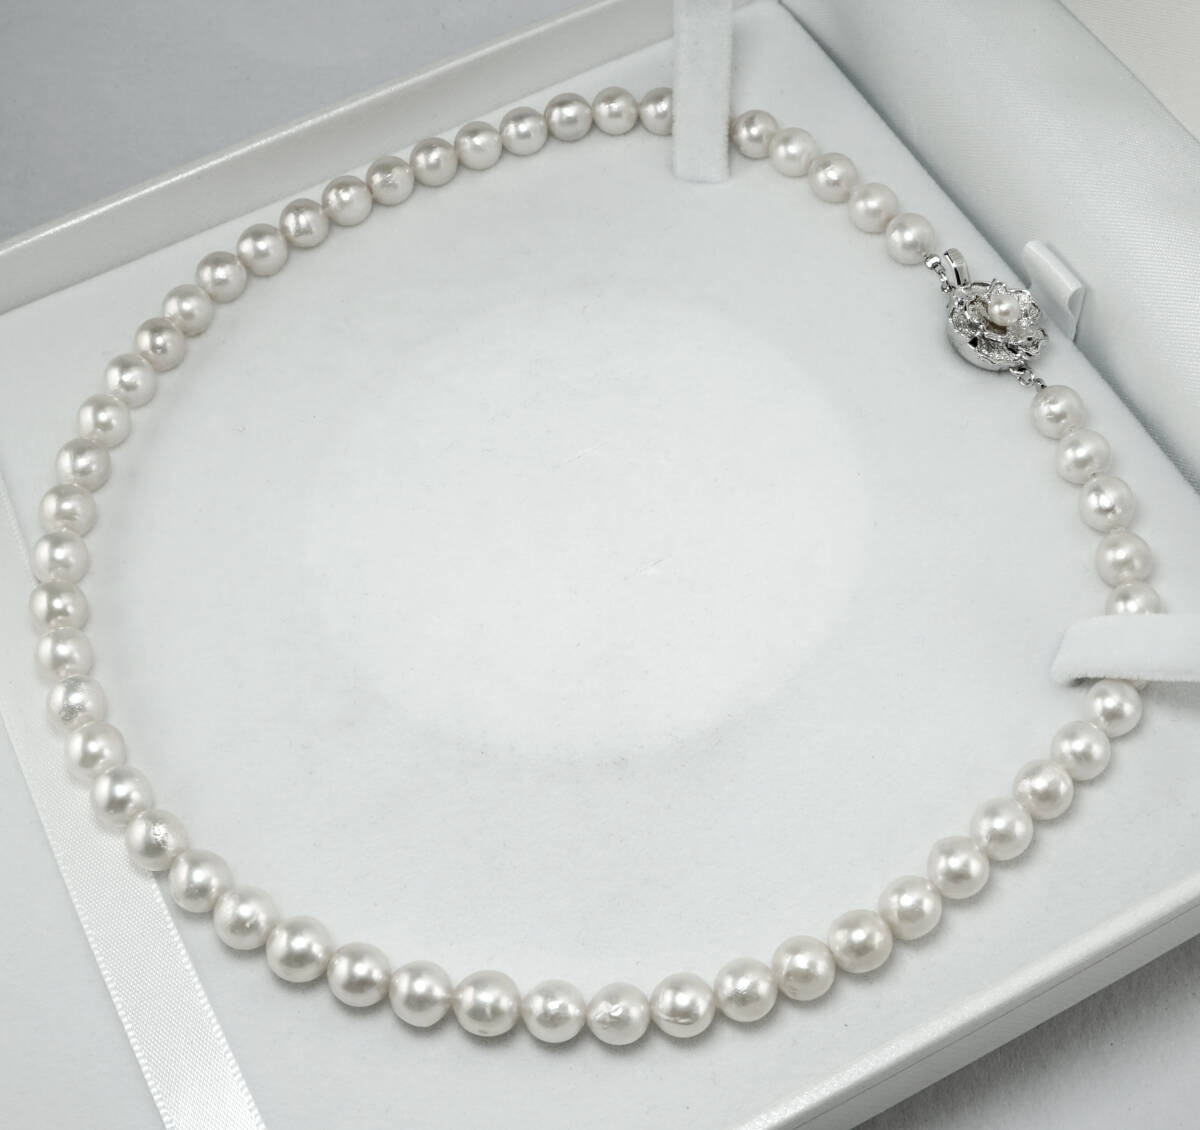 ★天然アコヤパール 7.5mm 最高級 42cm SV ネックレス 宝石 ジュエリー jewelry.の画像4